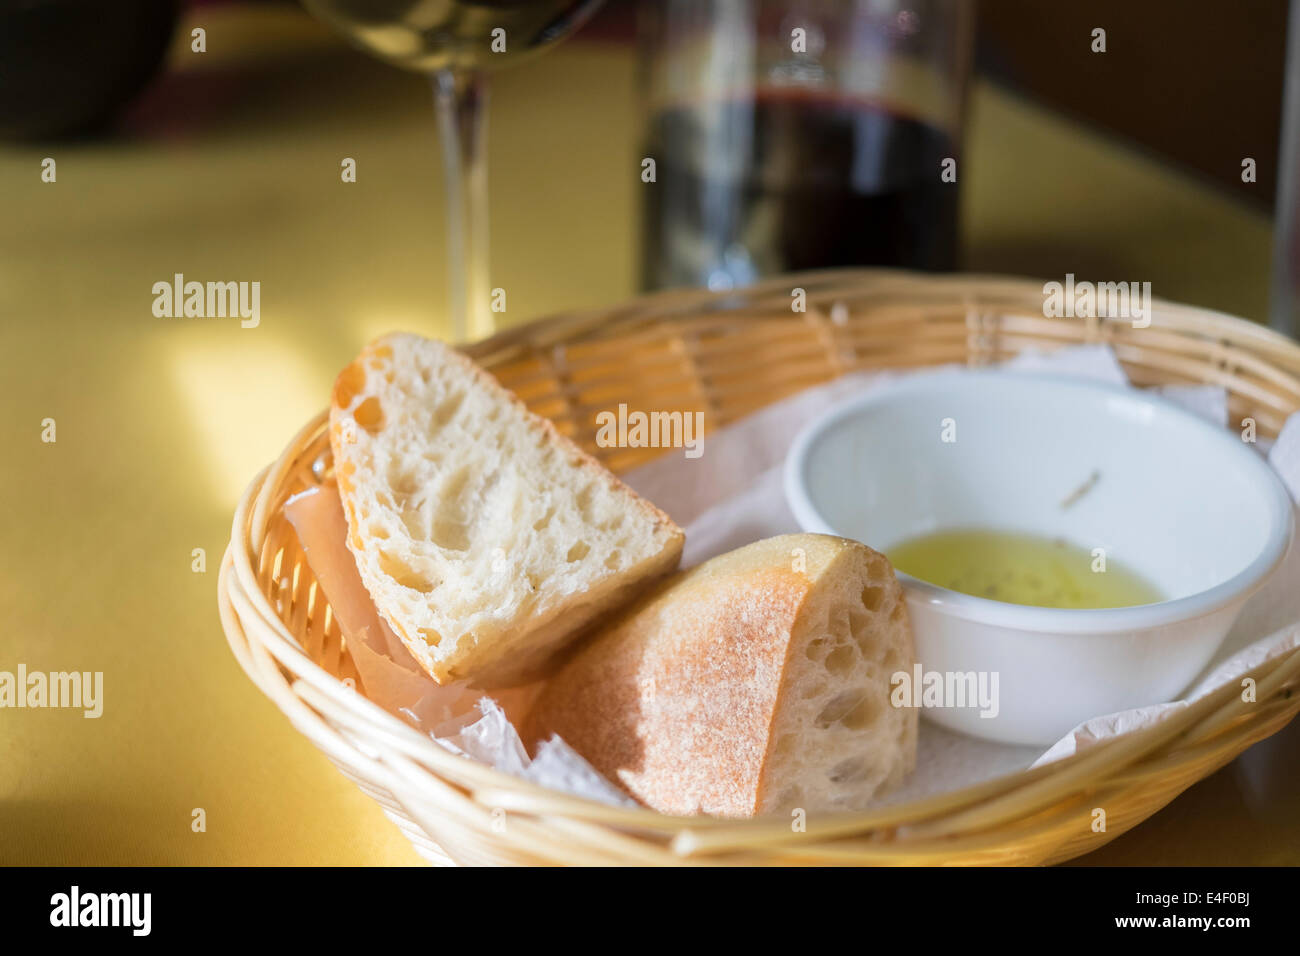 Italienisches Essen Tischdekoration mit Ciabatta-Brot, eine Schale mit Knoblauch-Olivenöl und Rotwein im Hintergrund. Stockfoto